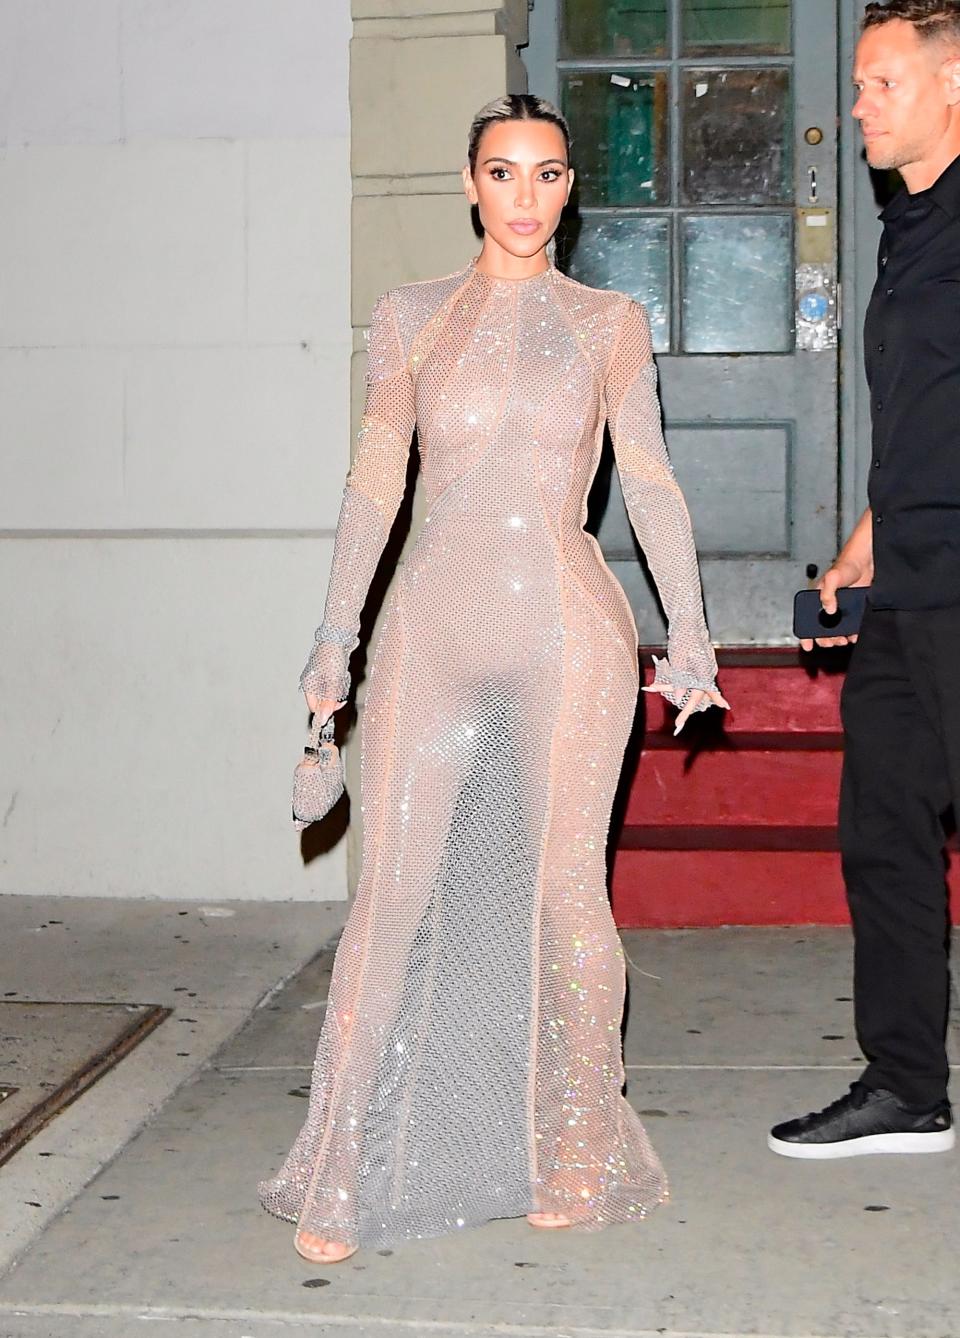 Kim Kardashian in New York City on September 9, 2022.